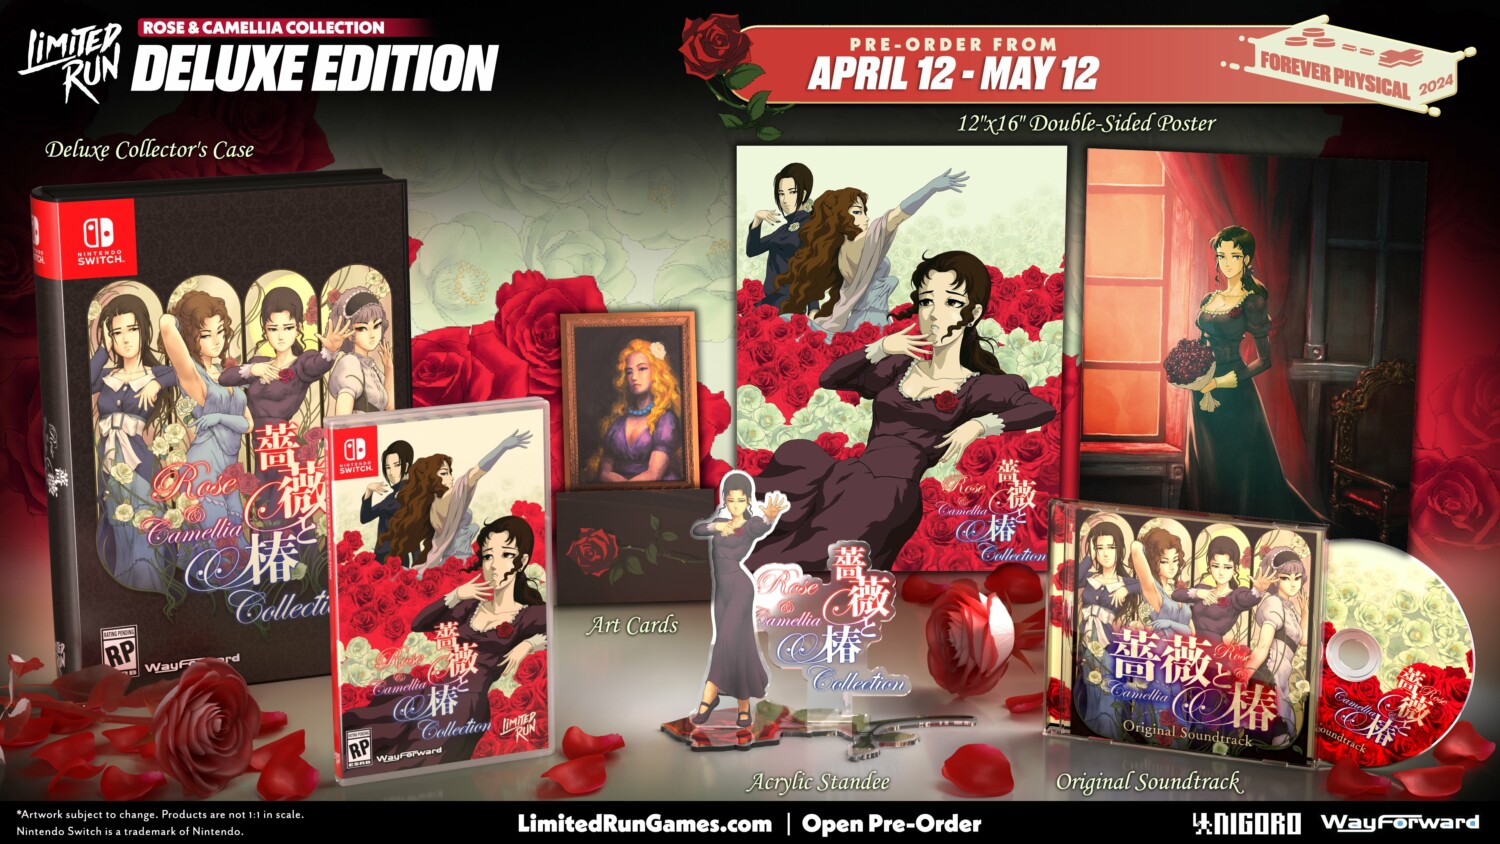 Rose & Camellia Collection llegará a Nintendo Switch el 16 de abril 1